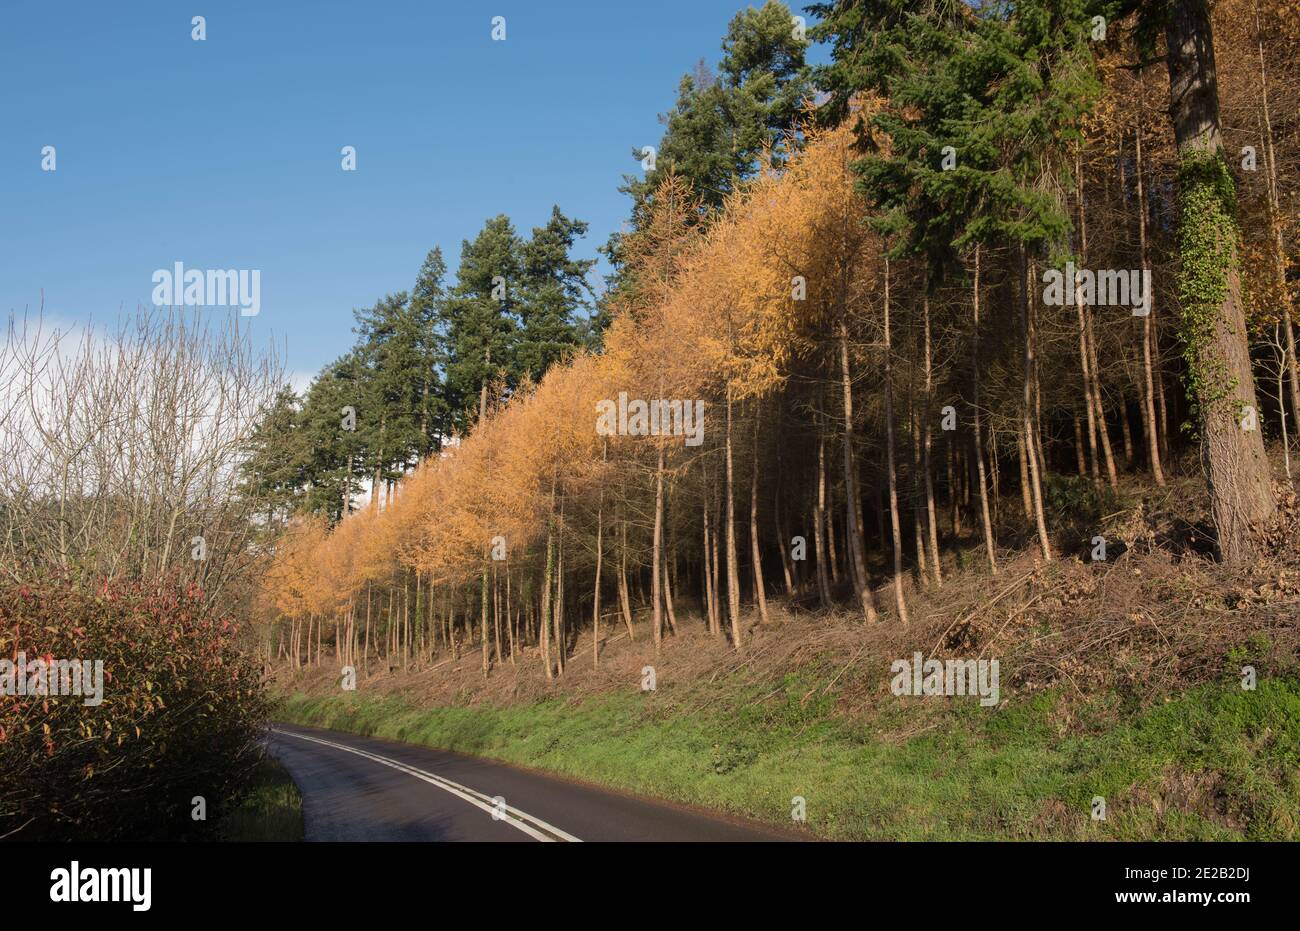 Couleur d'automne sur les laques européennes à feuilles caduques (Larix decidua) dans une forêt de Douglas à côté d'une route de campagne dans le Devon rural, Angleterre, Royaume-Uni Banque D'Images